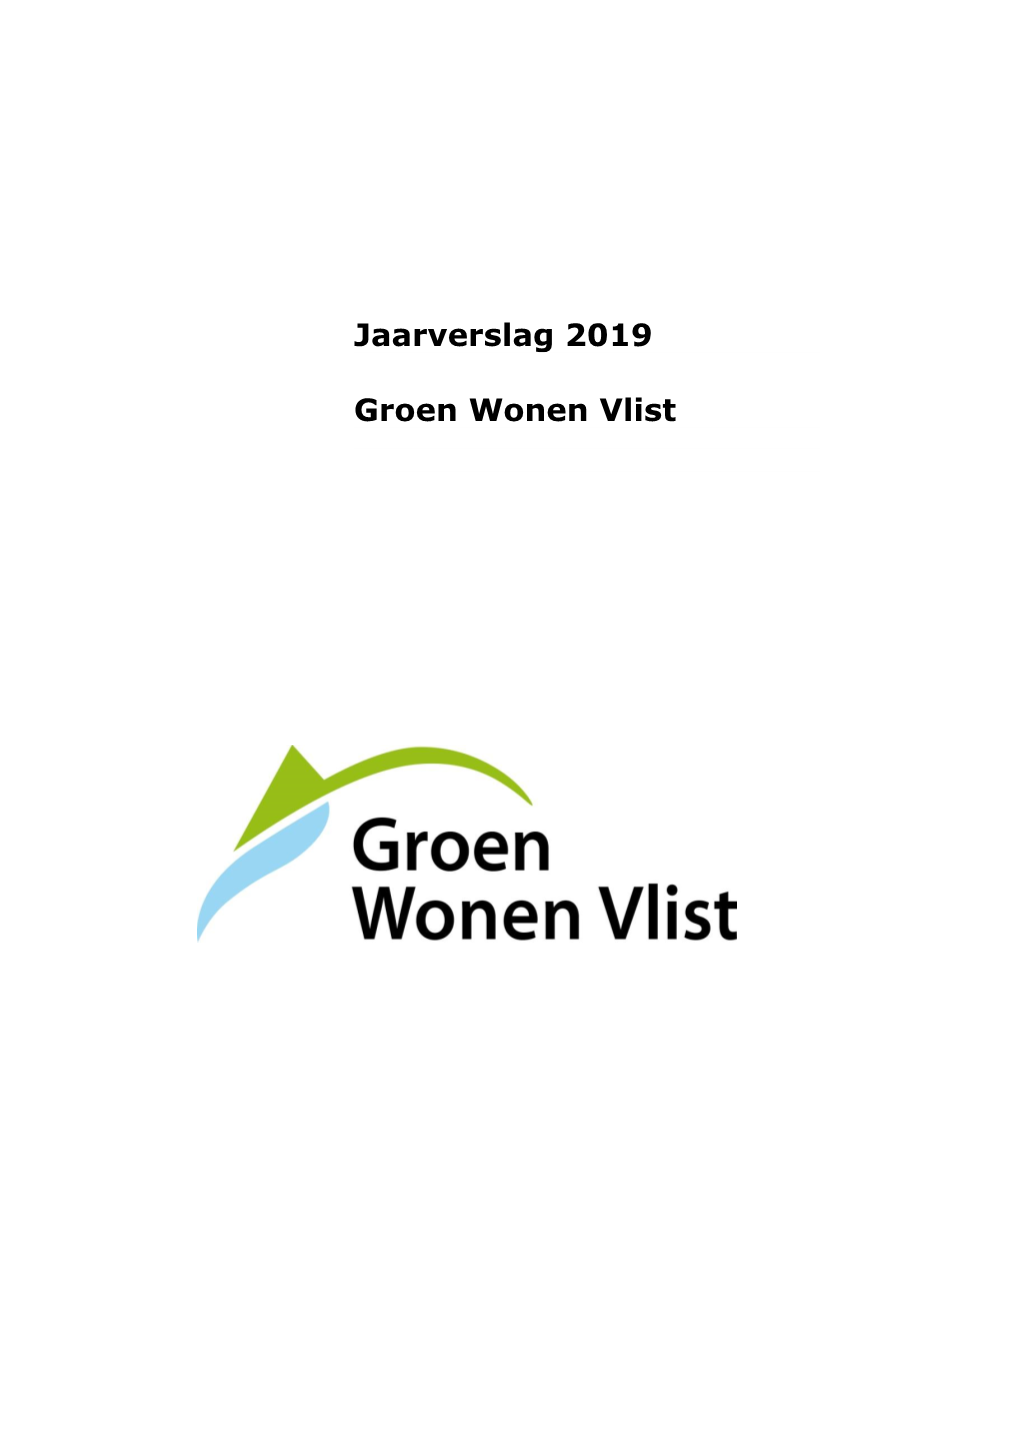 Jaarverslag 2019 Groen Wonen Vlist Grondslagen Van Waardering in De Jaarrekening